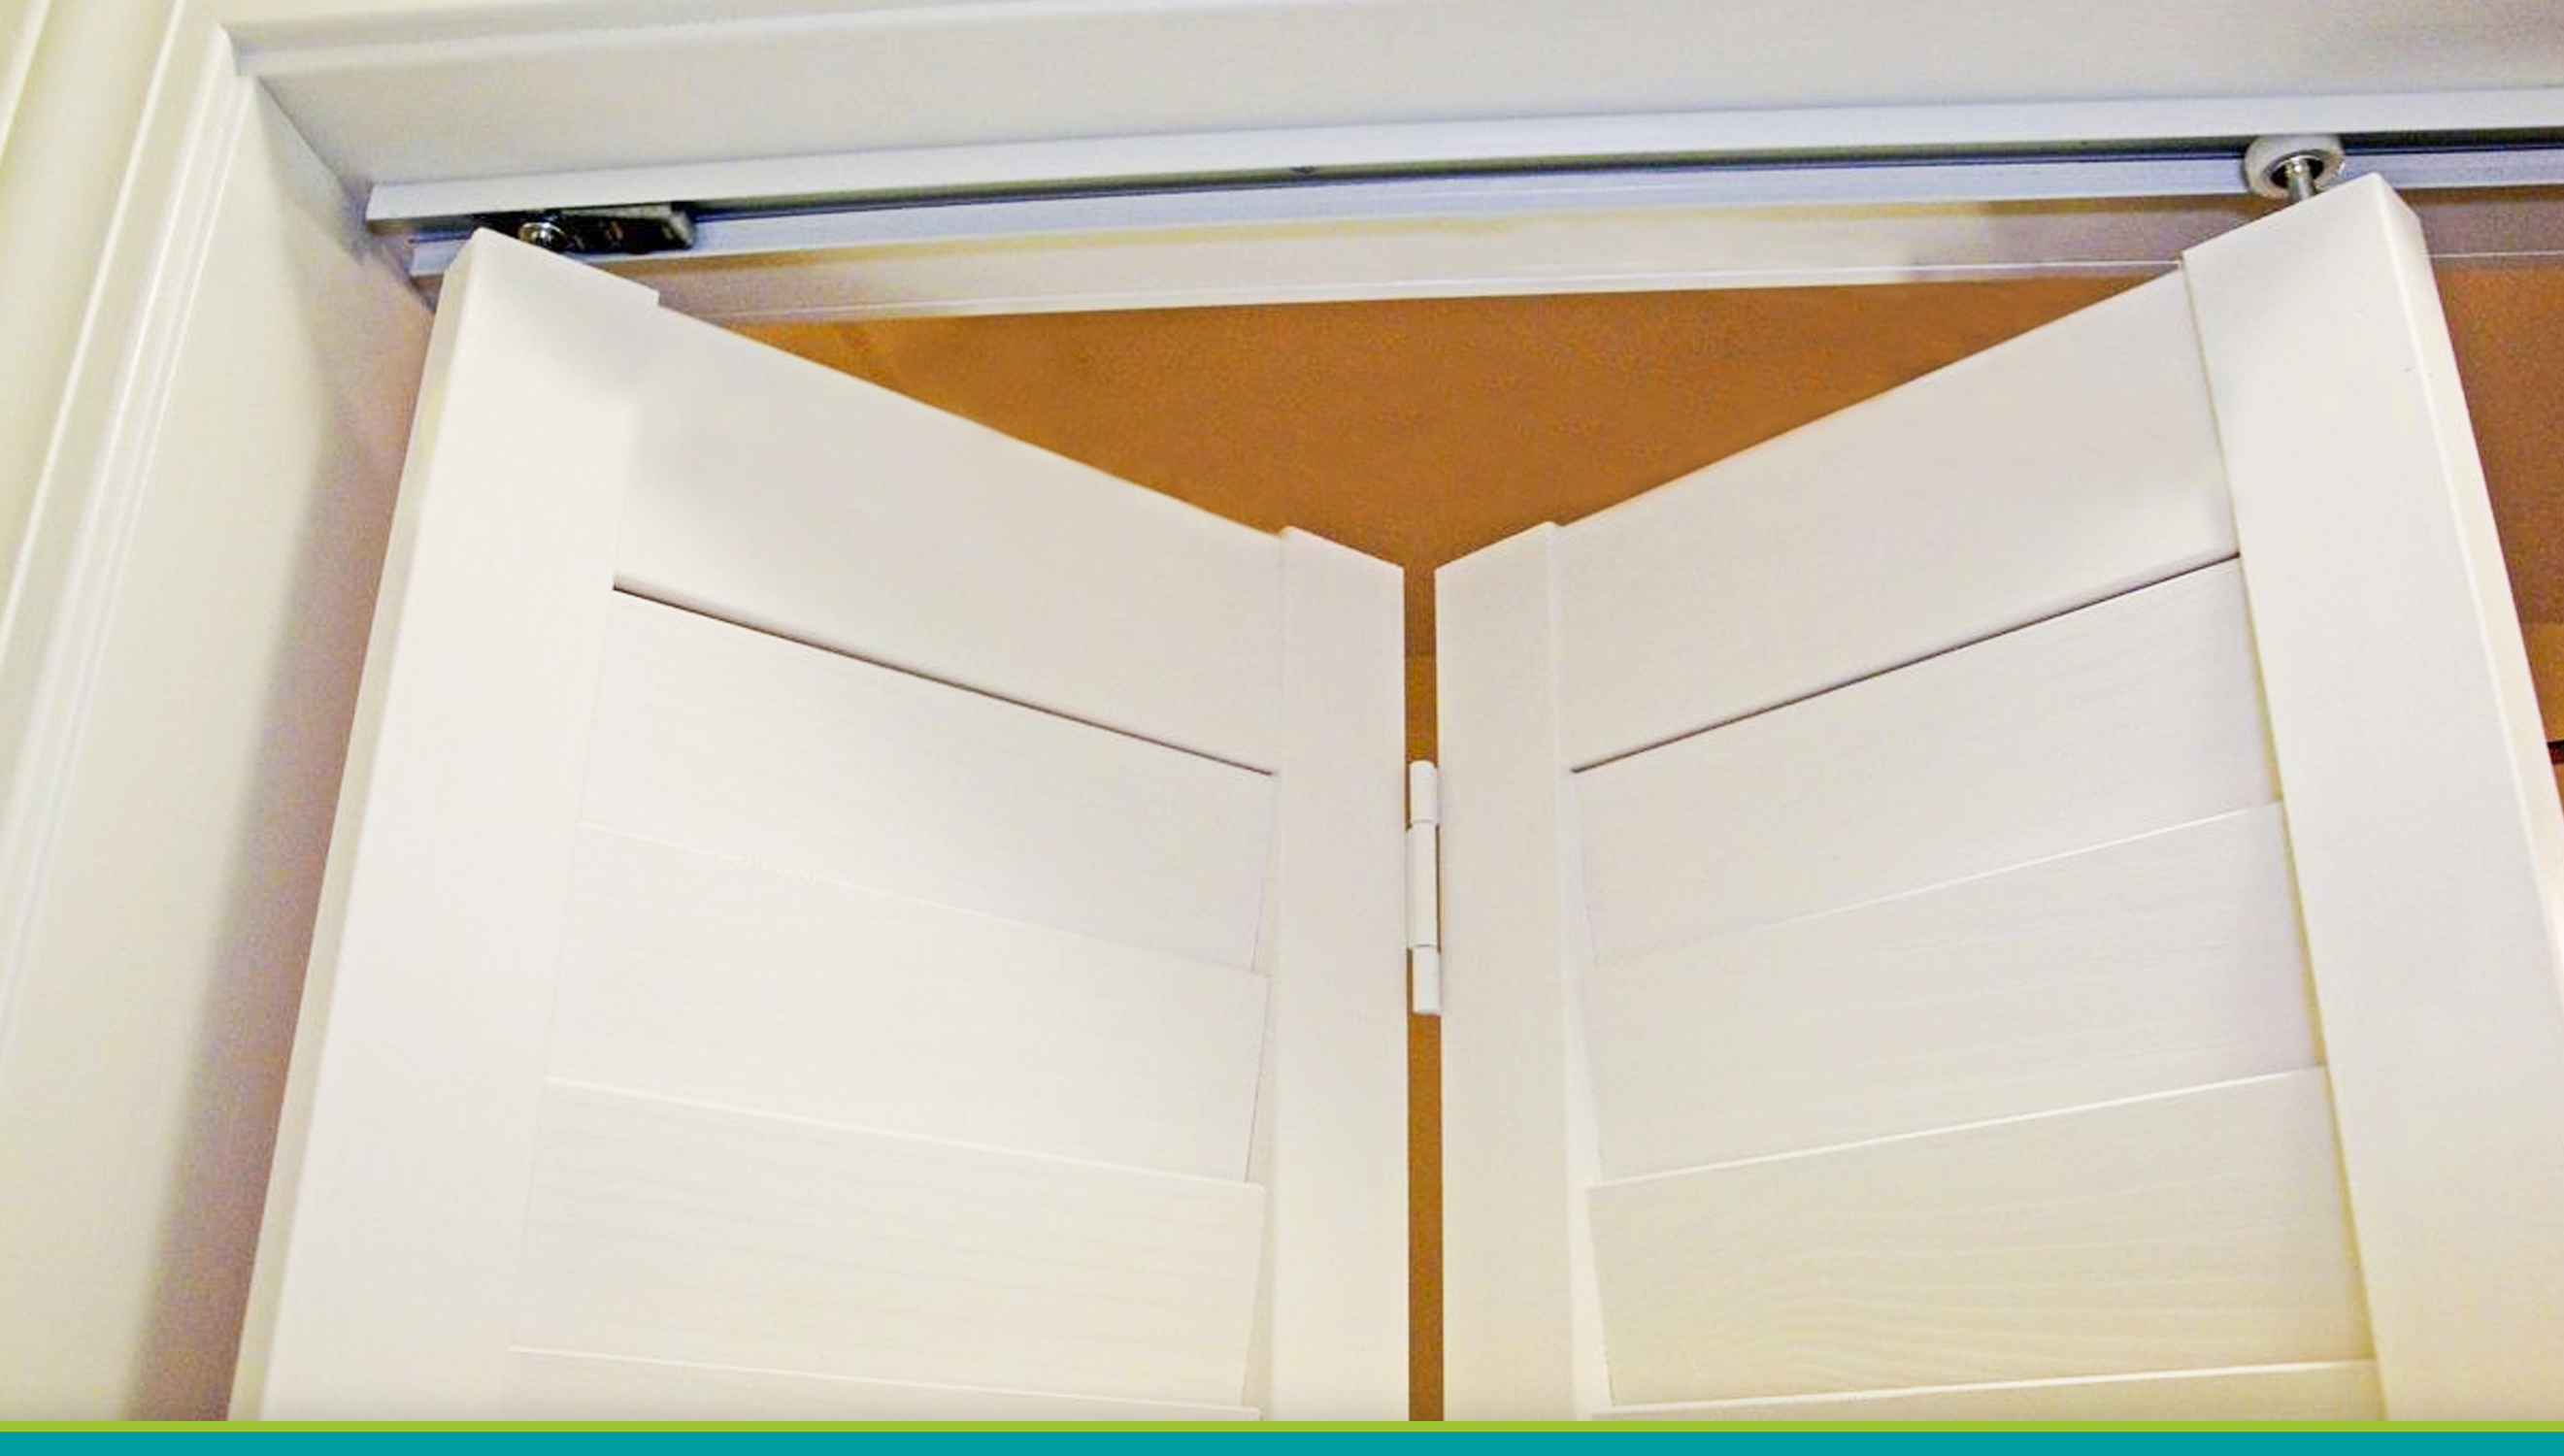 How to install bifold doors?